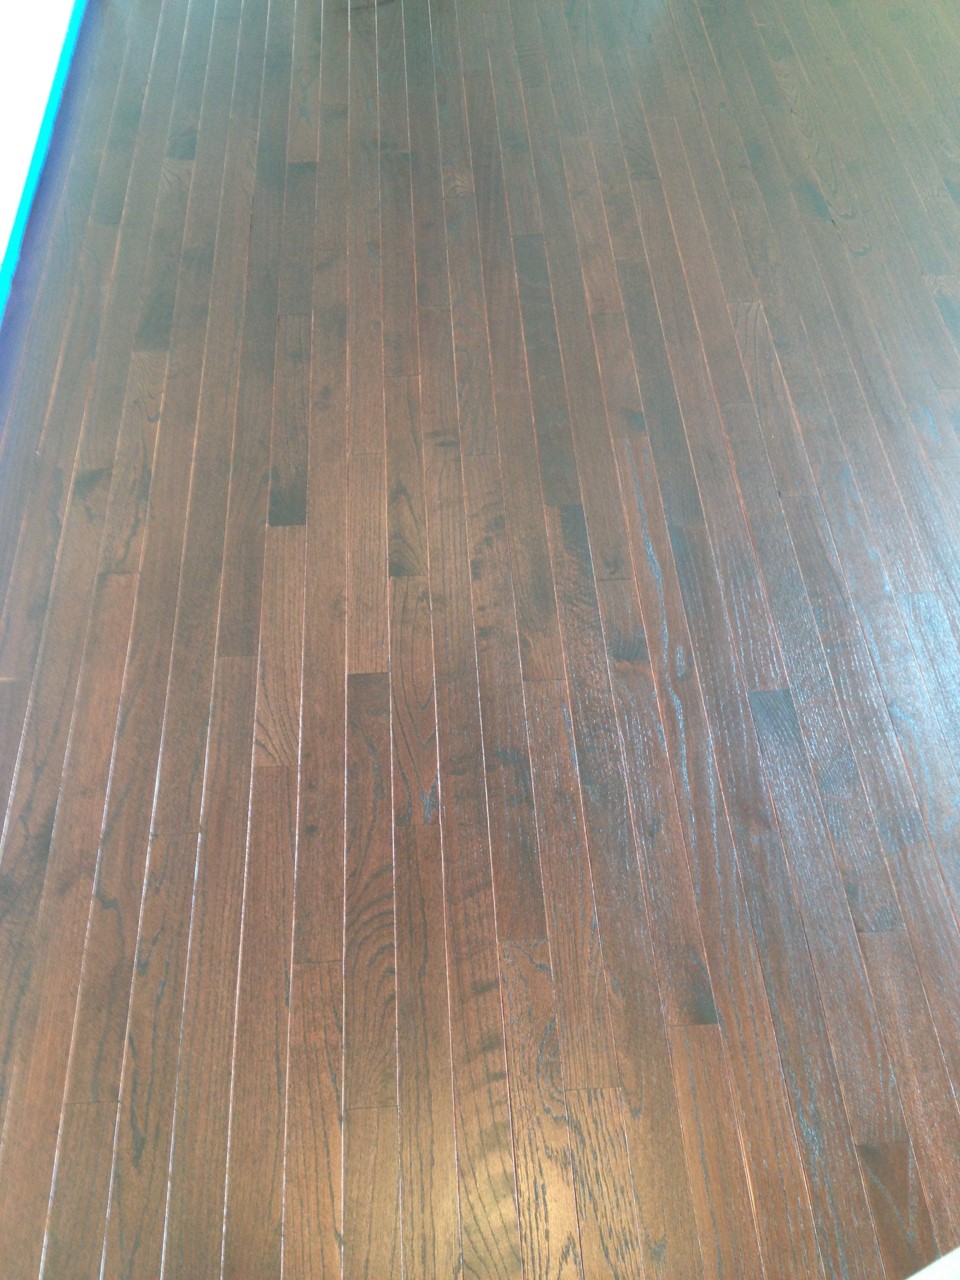 Unfinished Hardwood Flooring, Prefinished Hardwood Flooring Vs Unfinished